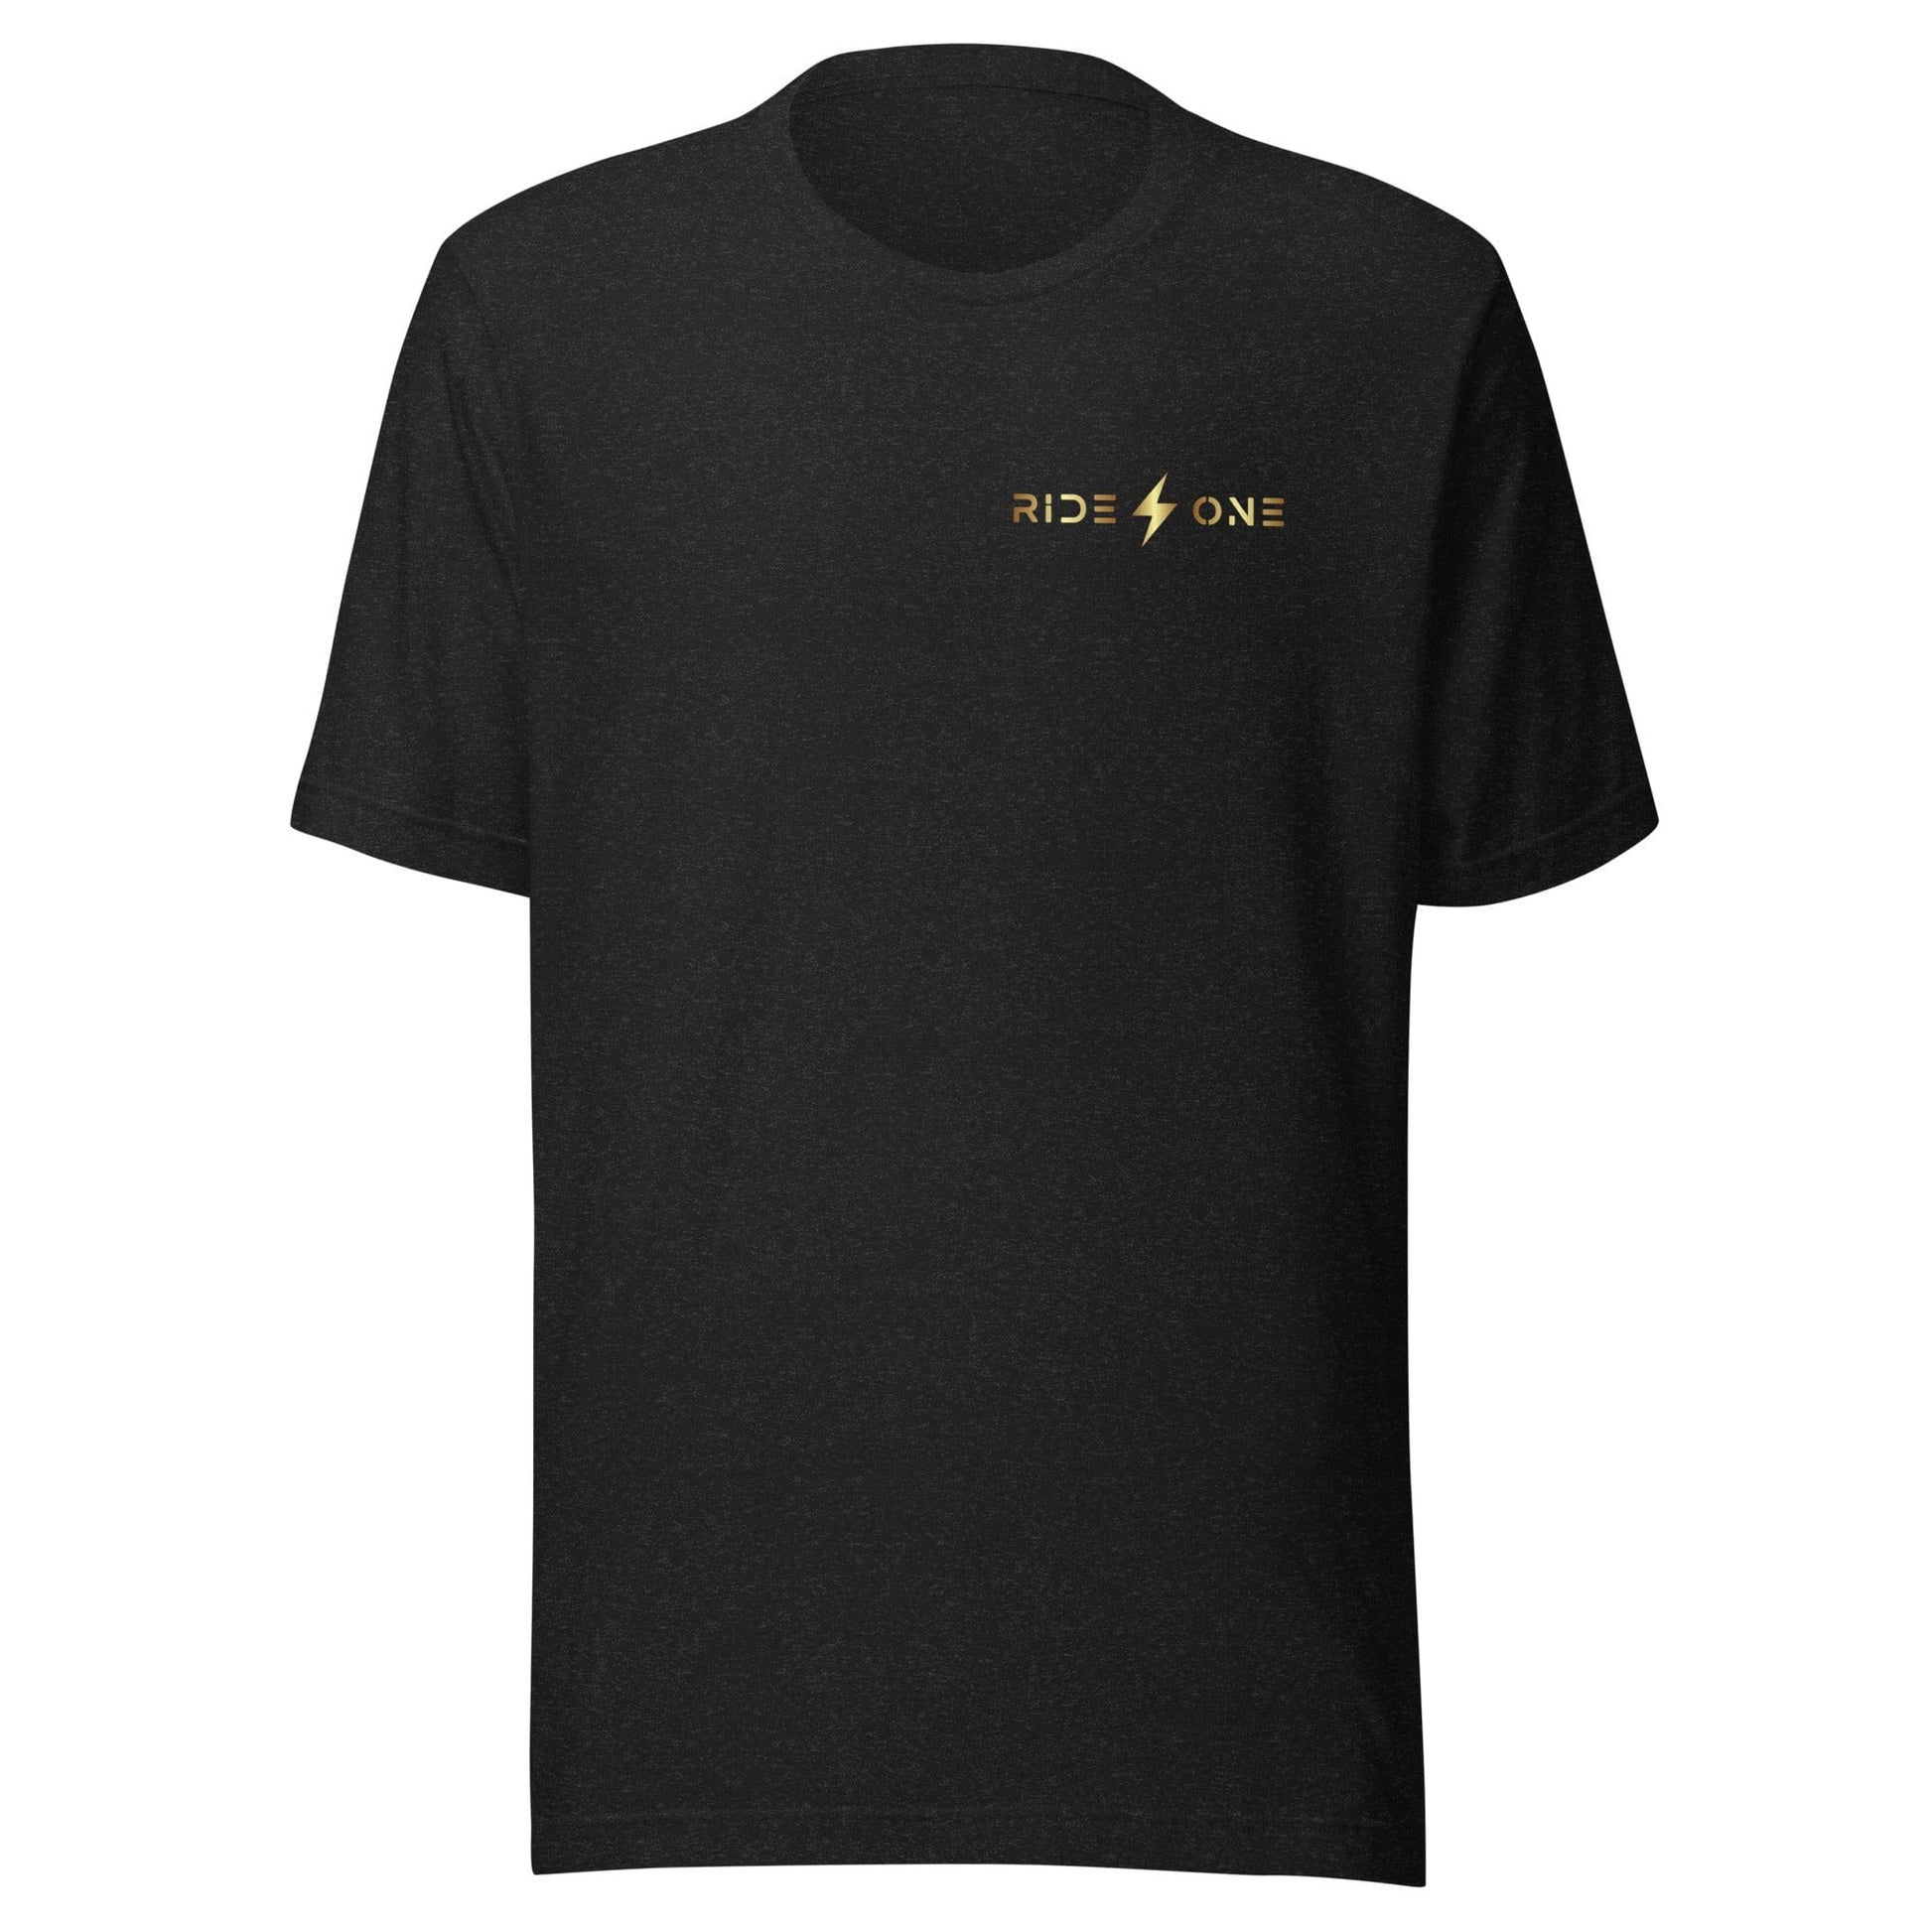 Ride One clothing Black Heather / XS Unisex t-shirt (Ride One)